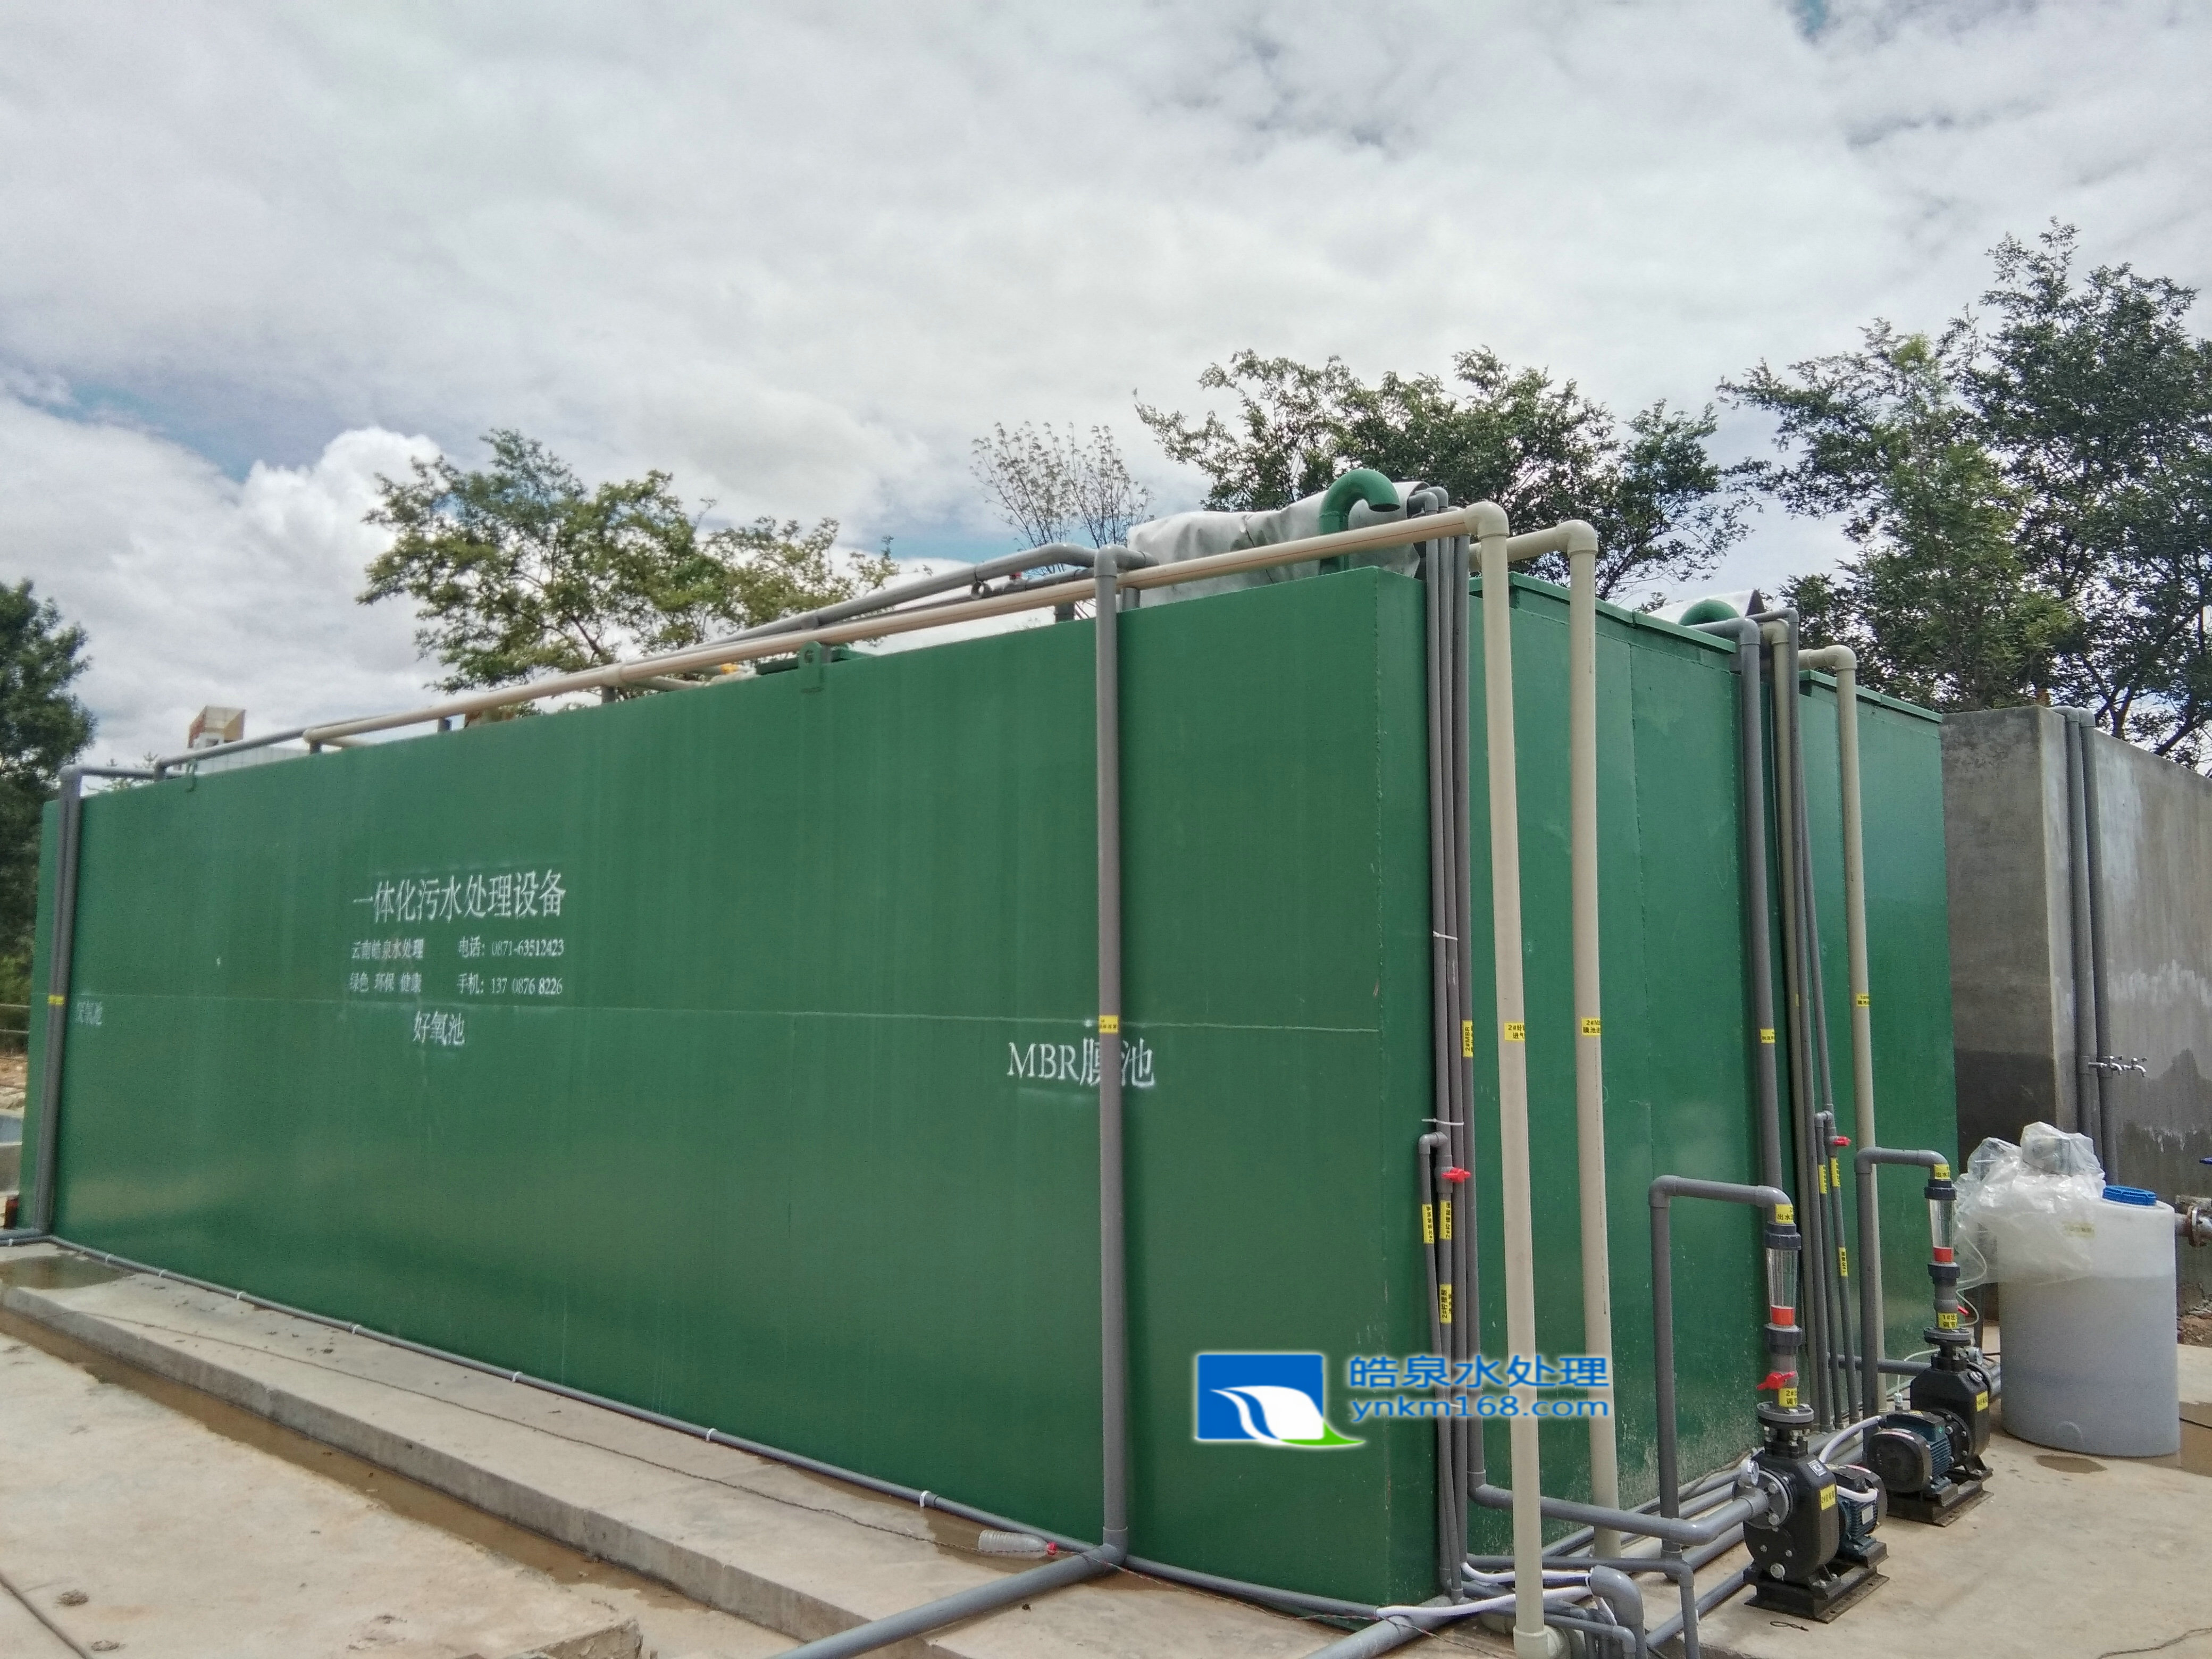 一体化生活废水污水处理设备应用在云南祥云中天锑业有限责任公司